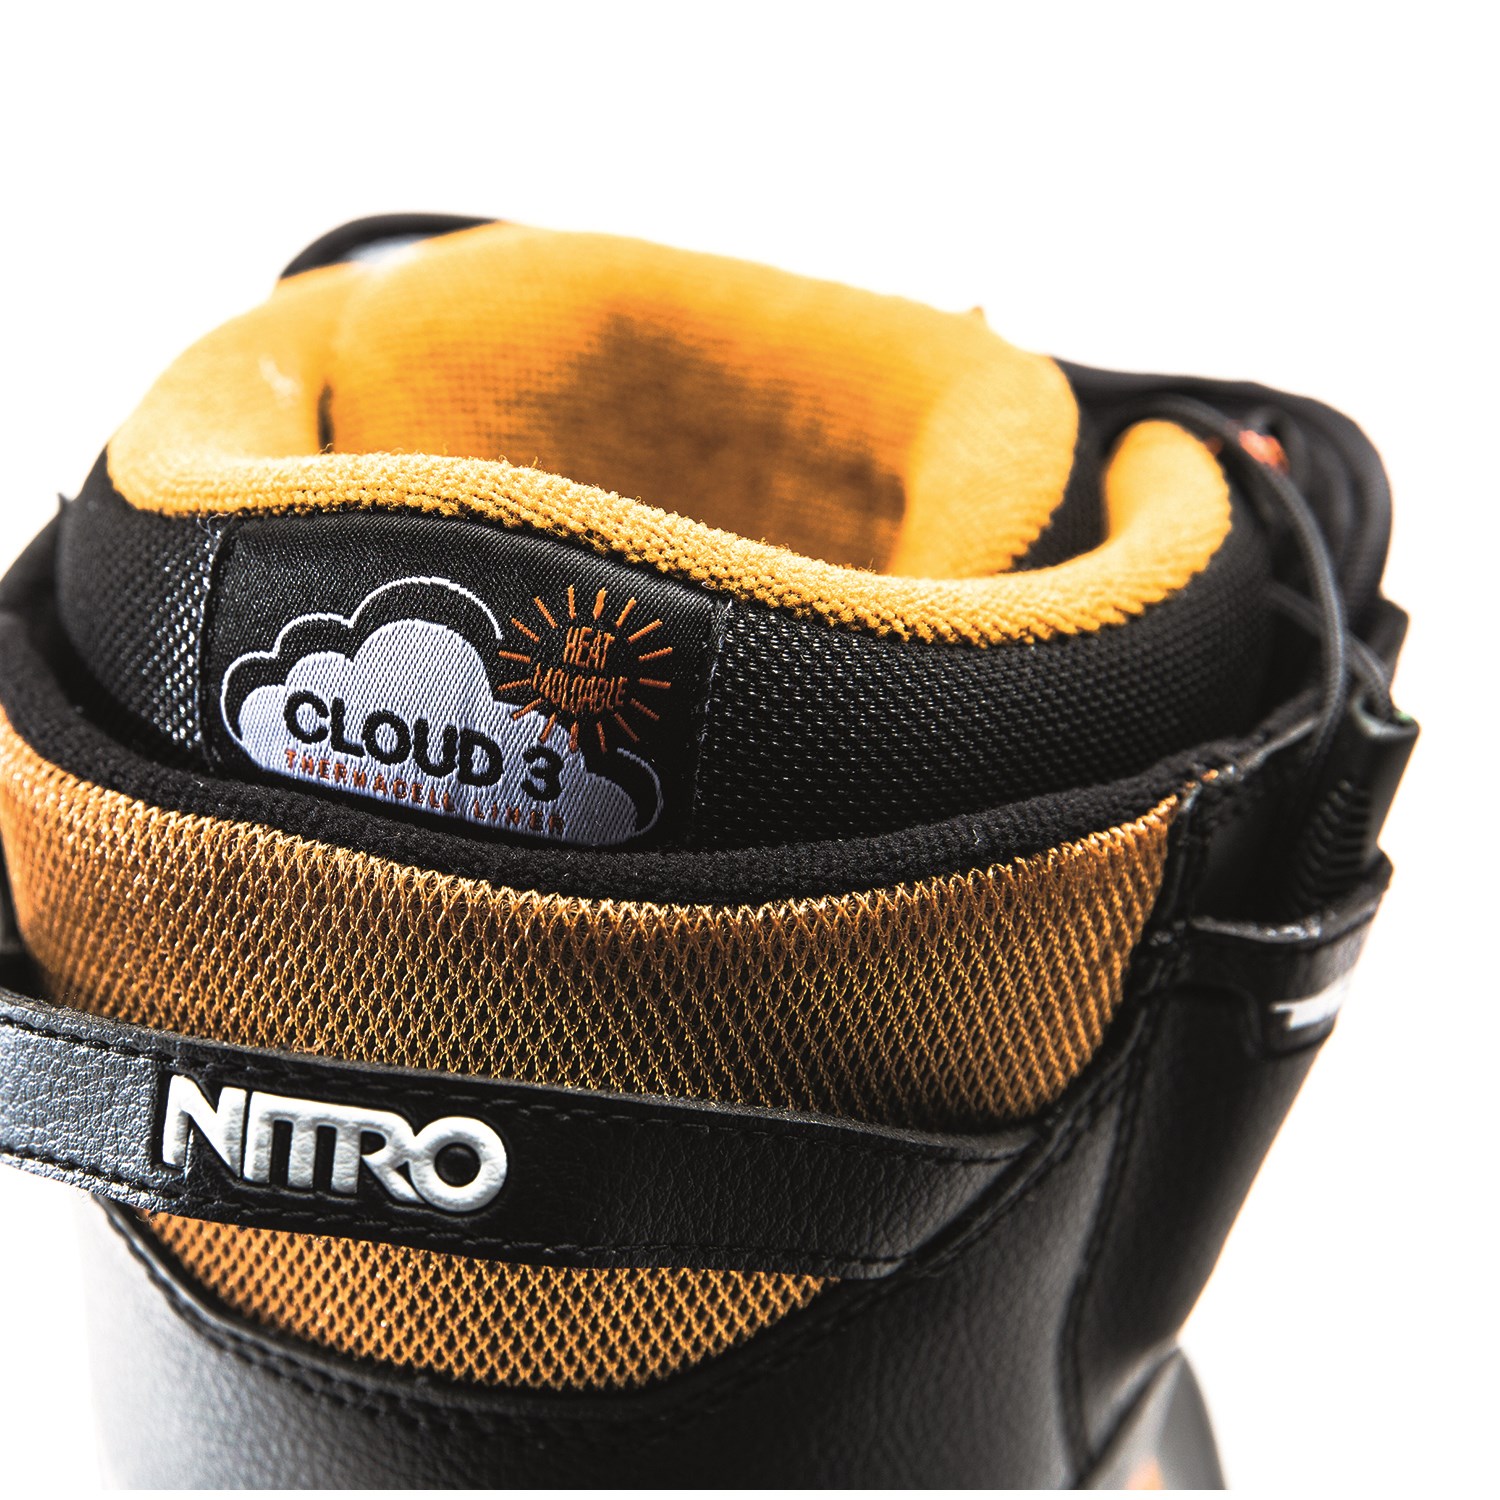 verkeer Verduisteren capaciteit Nitro Thunder TLS Snowboard Boots 2018 | evo